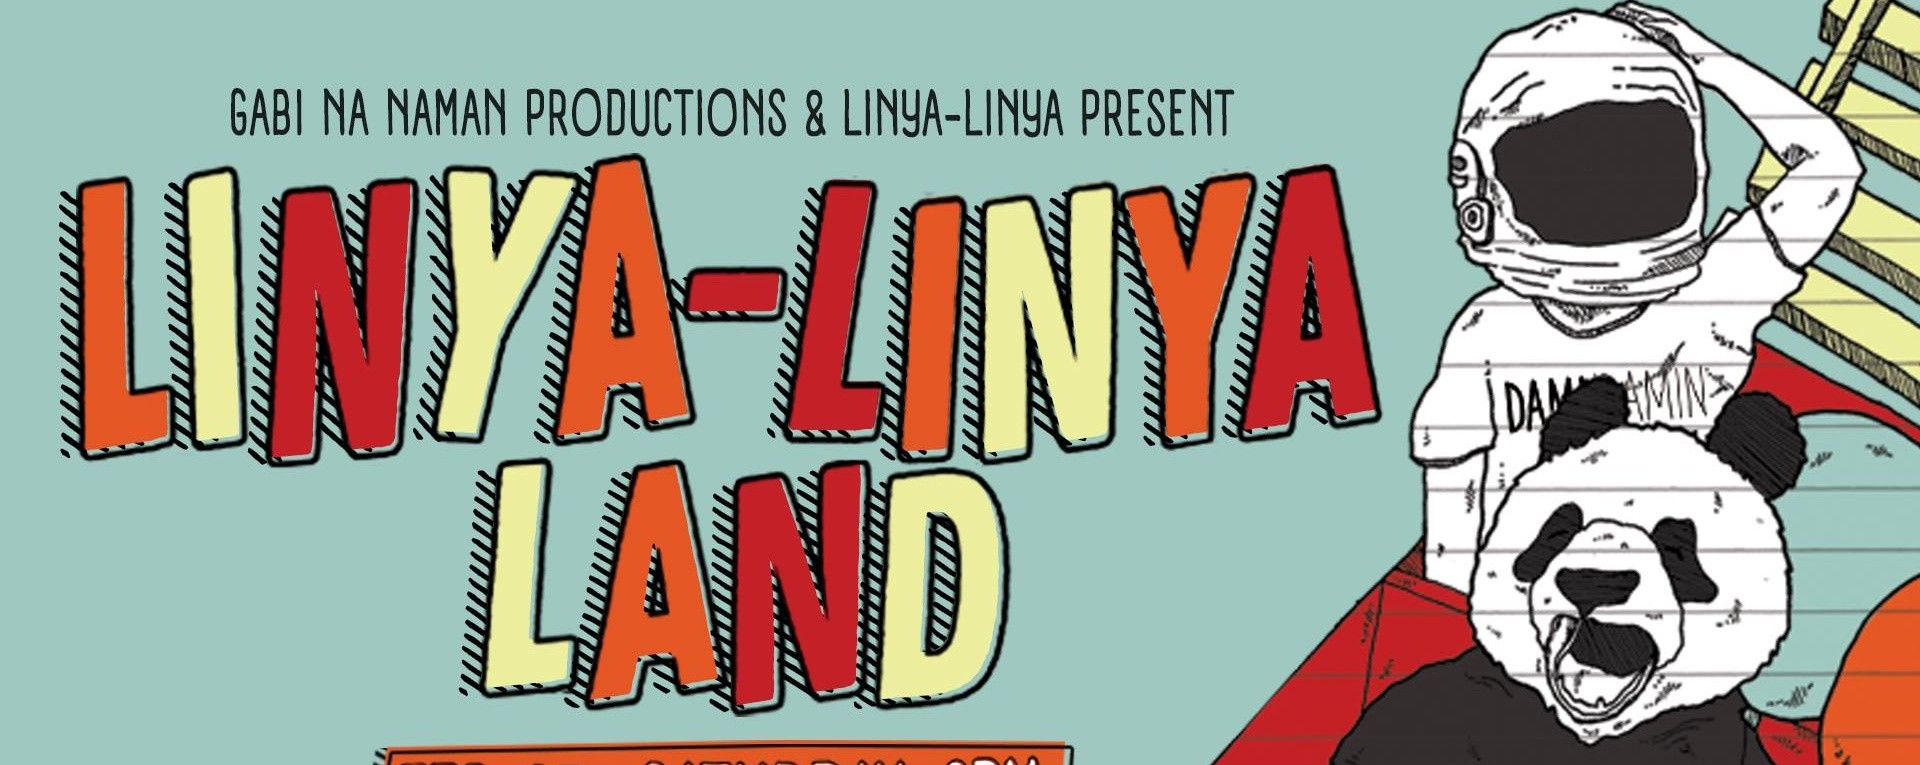 Linya-Linya Land